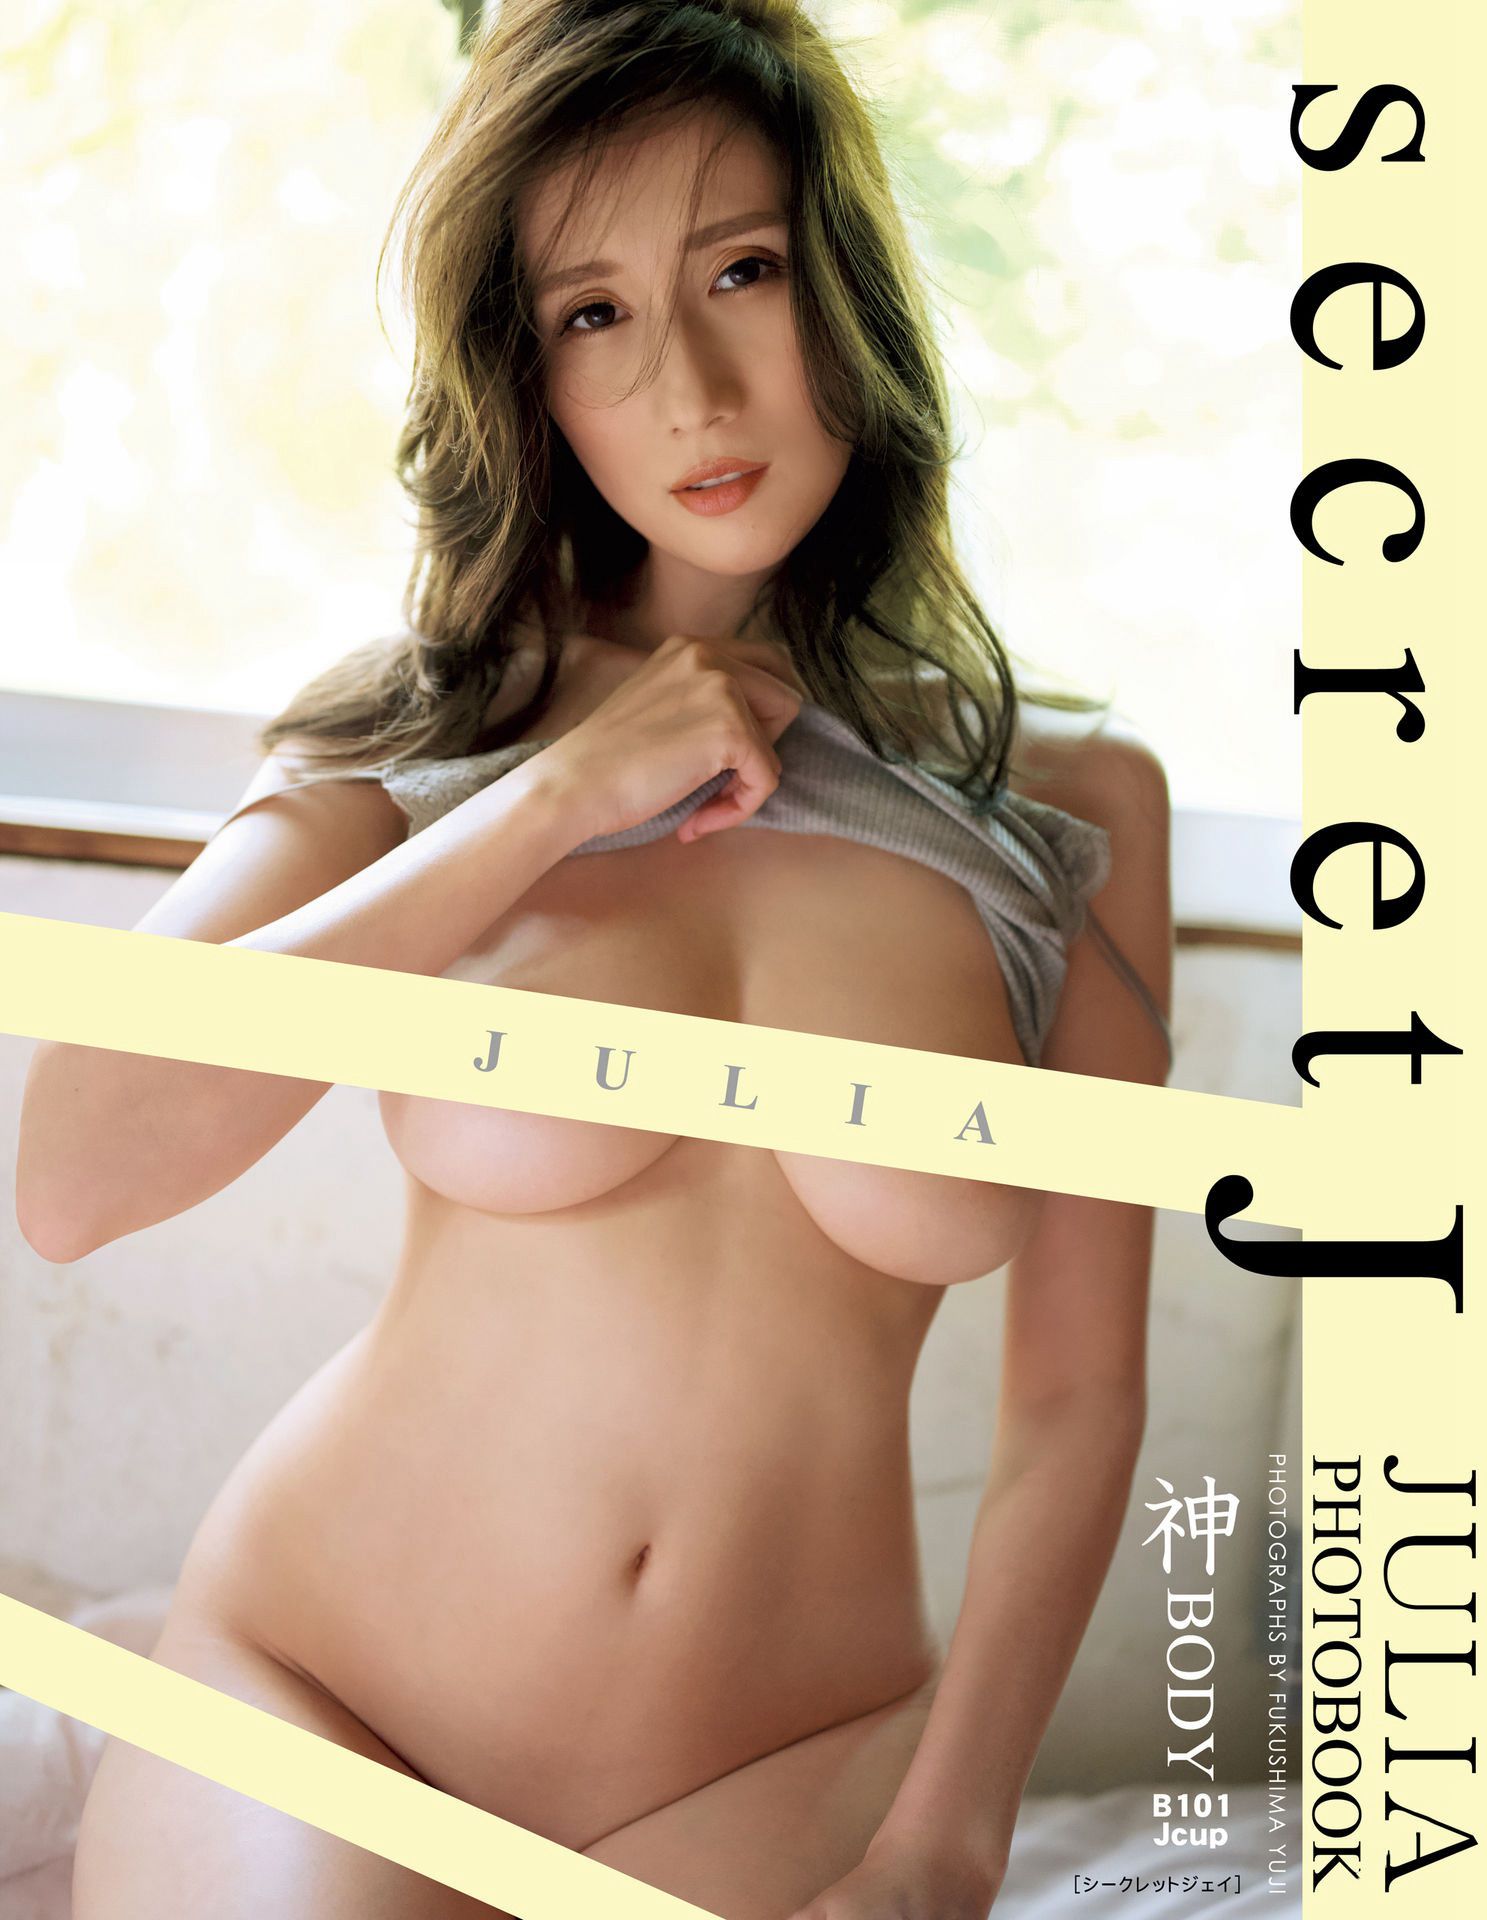 [PB写真集] JULIA - secret J